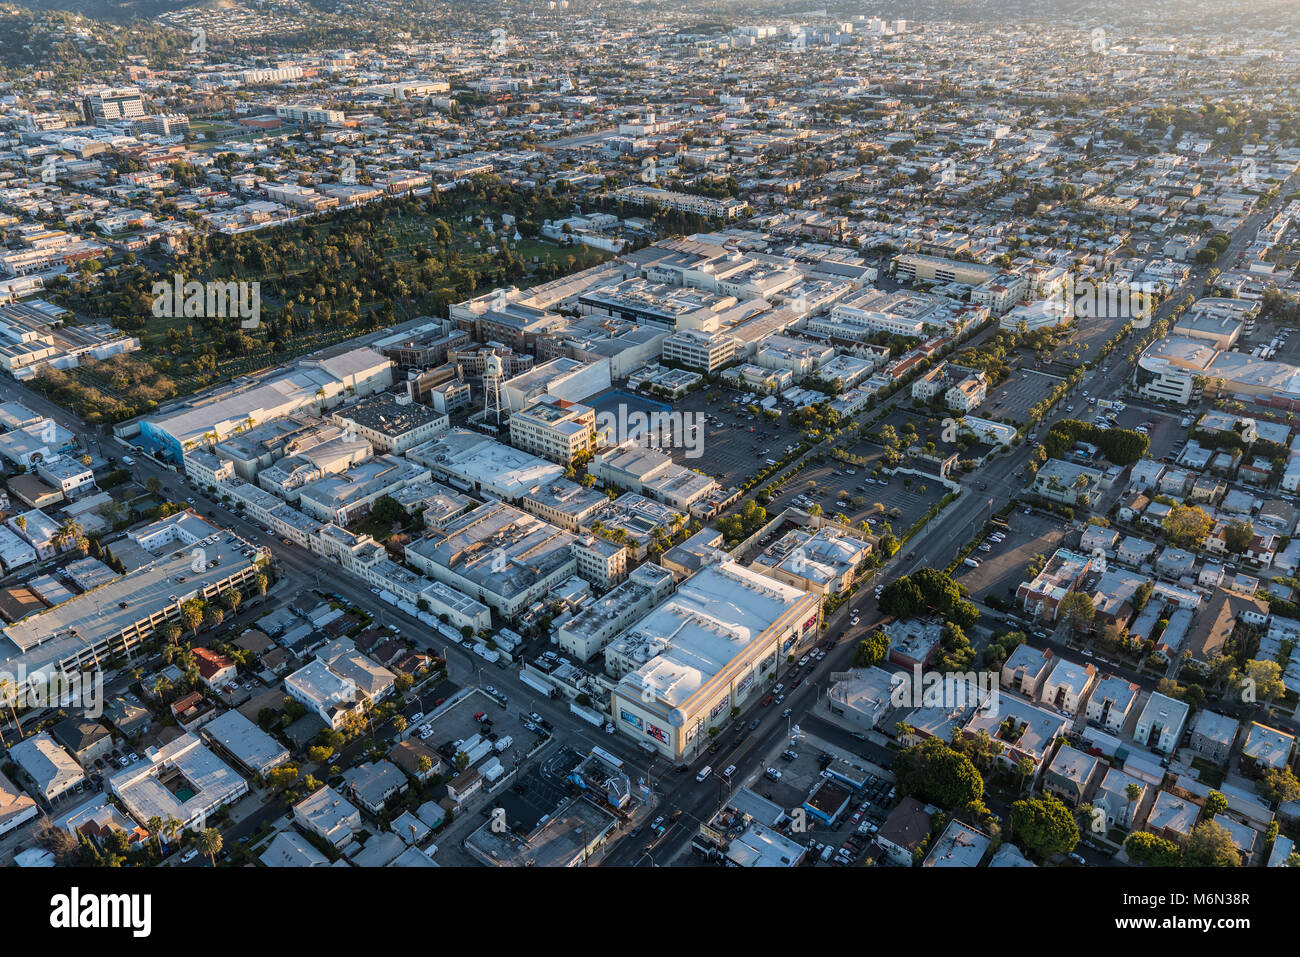 Los Angeles, Californie, USA - 20 Février 2018 : Vue aérienne de Hollywood et Paramount Pictures Studio sur Melrose Av. Banque D'Images